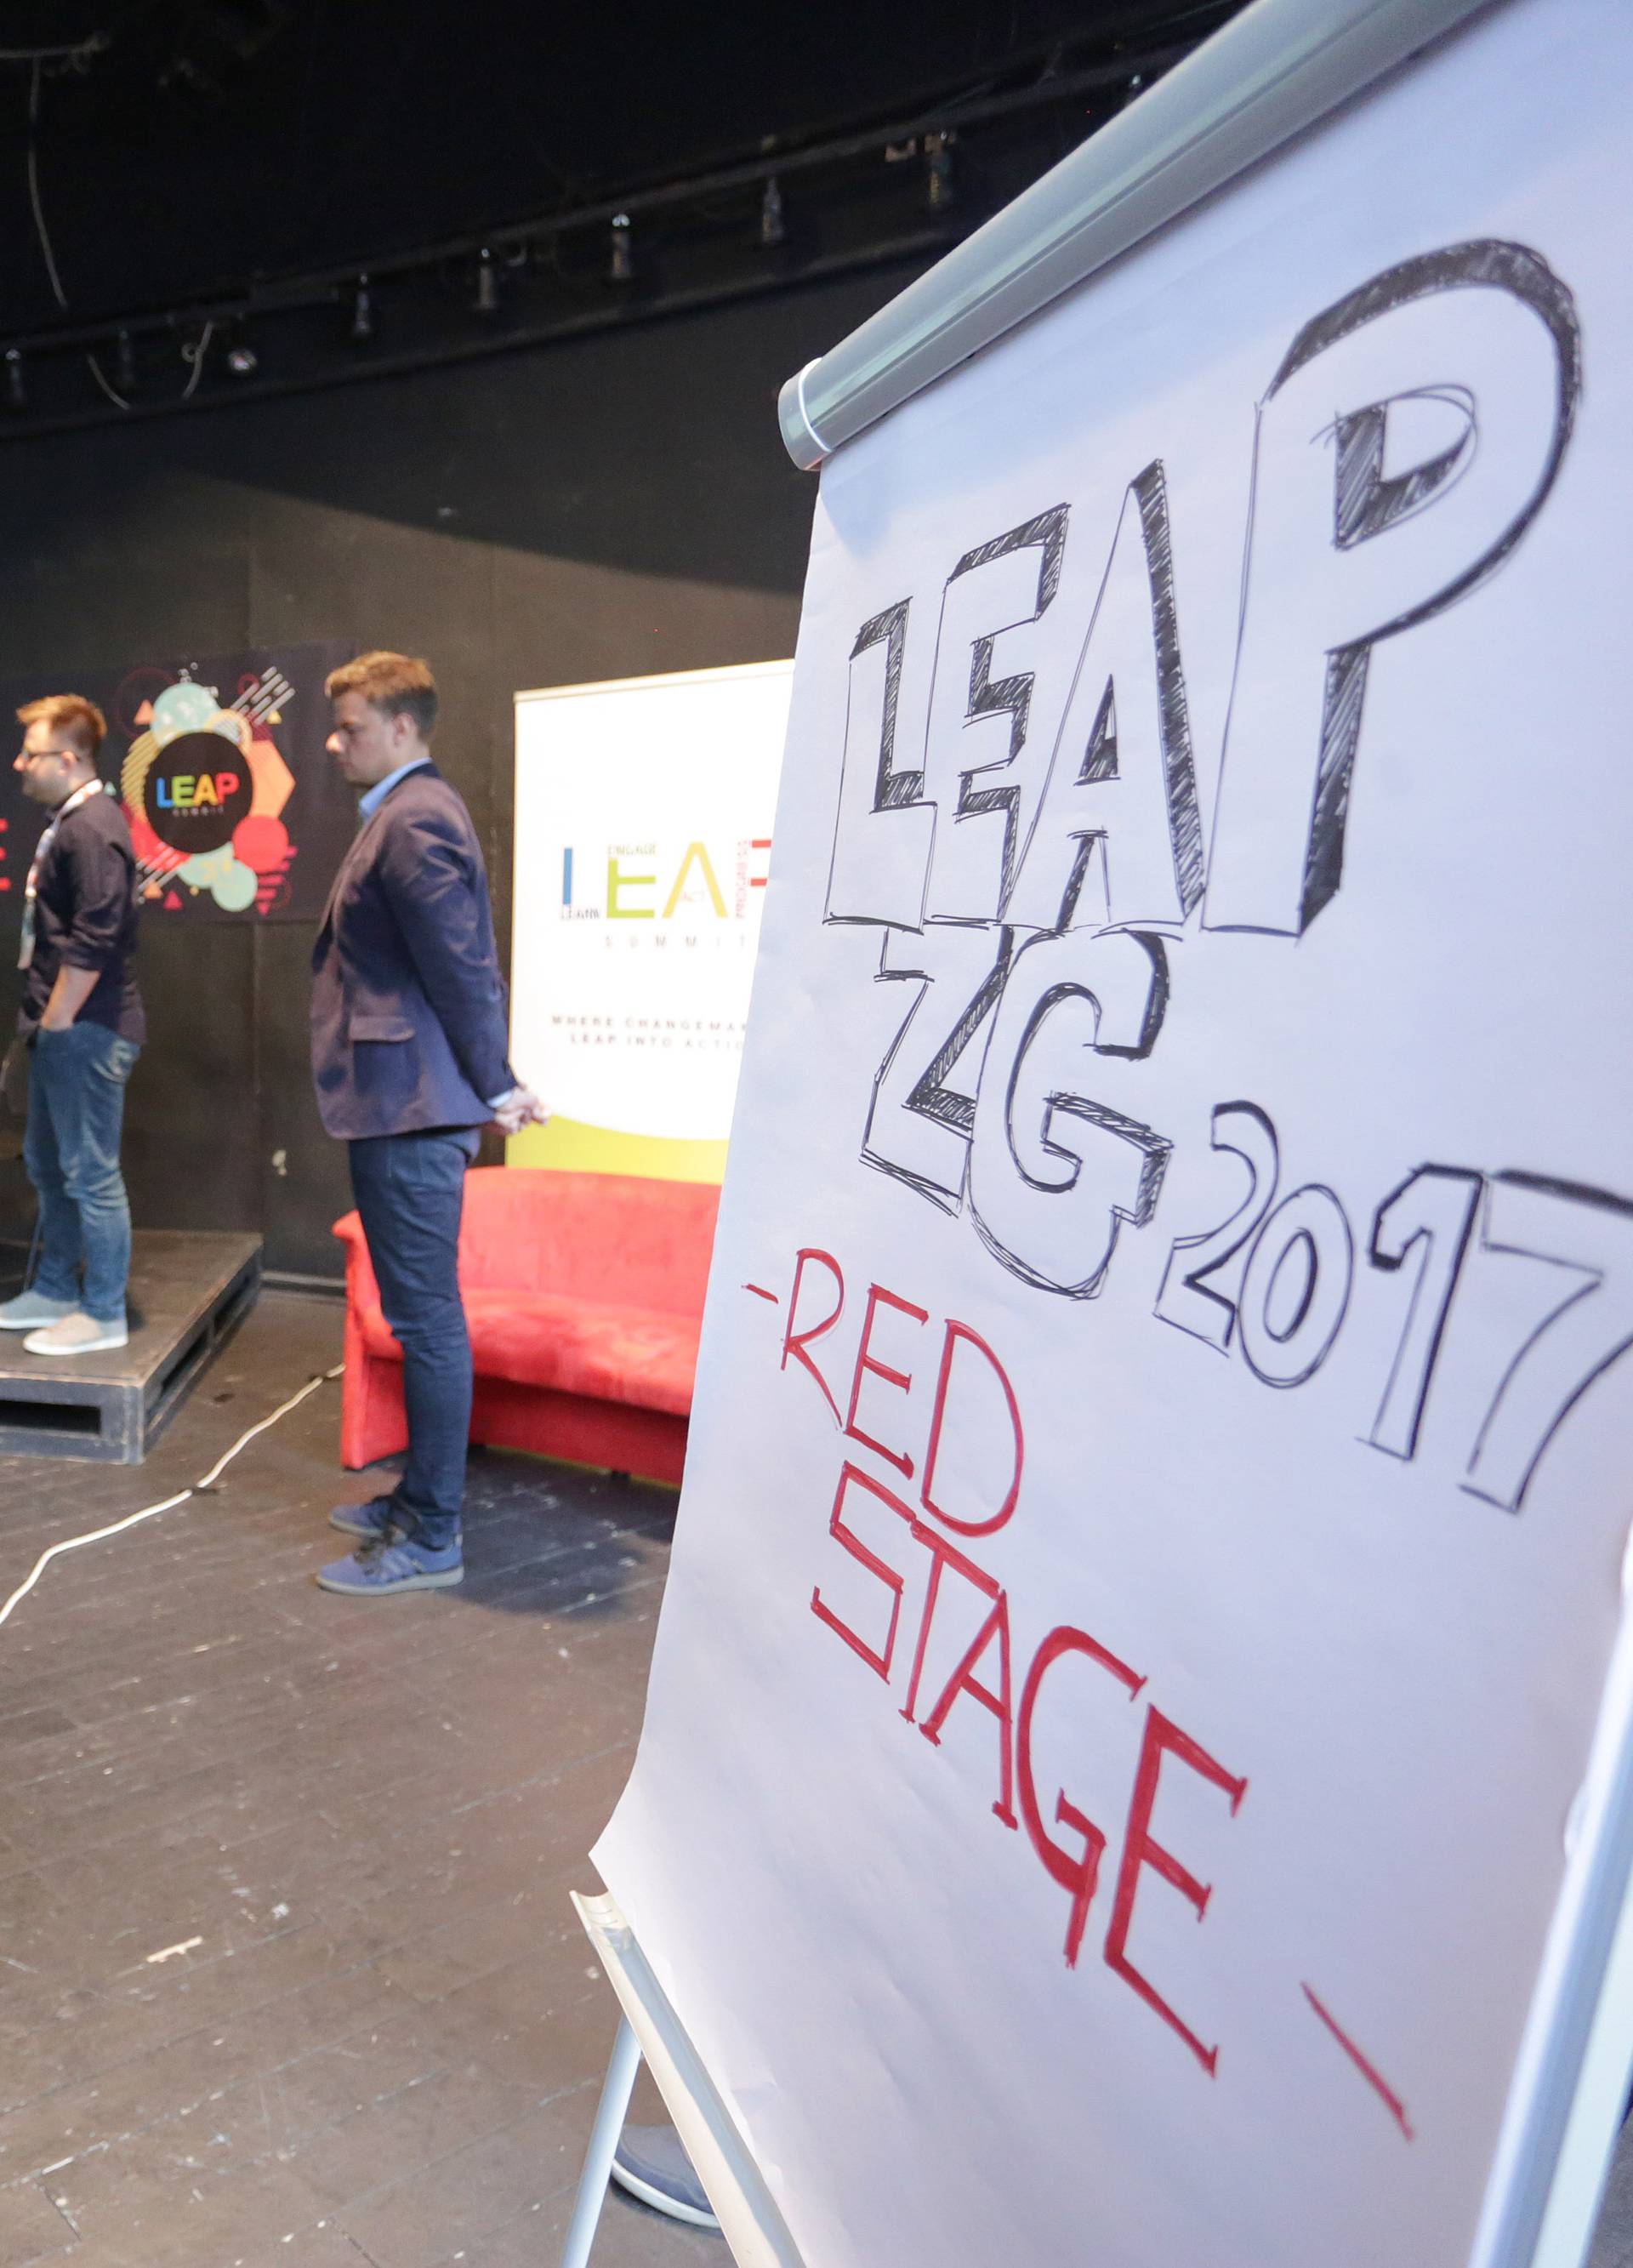 'Leap summit': 24sata uživo prate sve najvažnije događaje